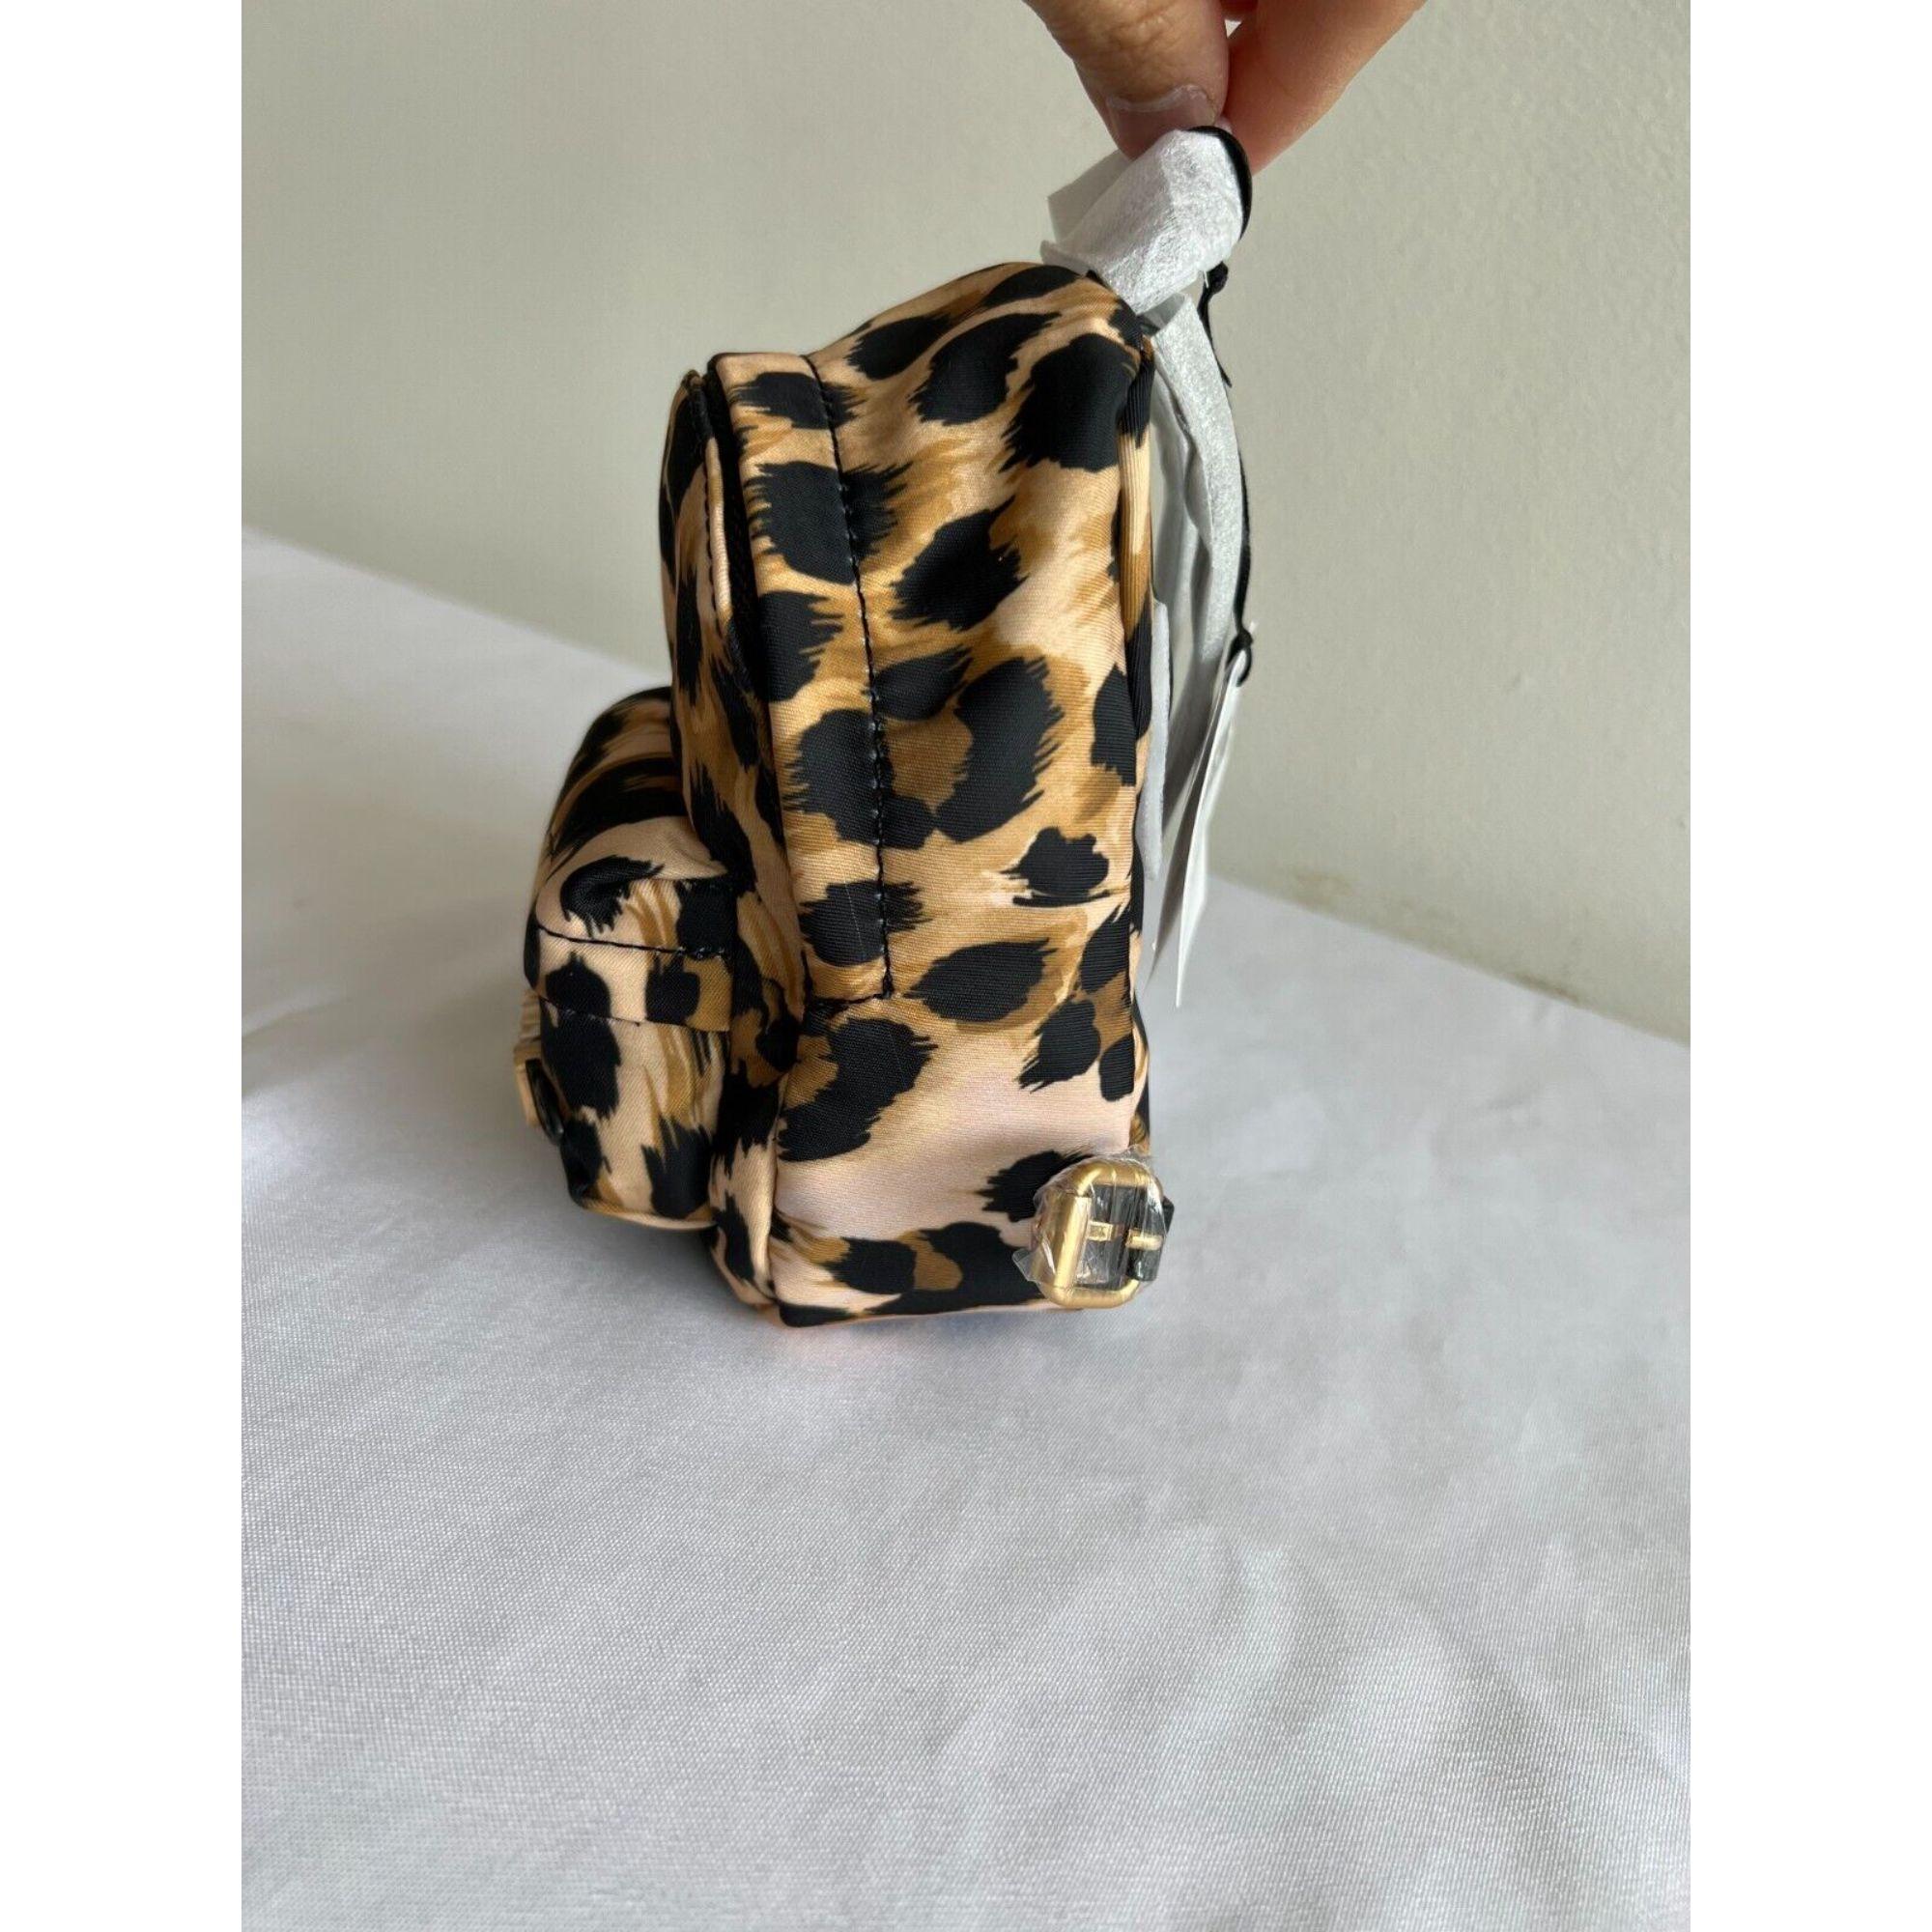 AW21 Moschino Couture Jeremy Scott Sac à bandoulière imprimé léopard Mini sac à dos

Informations supplémentaires :
Matière : Détails en cuir et 44% CO 41% PA 15% PU
Couleur : marron, or, noir
Motif : Imprimé léopard
Taille : Mini
Style : Sac à